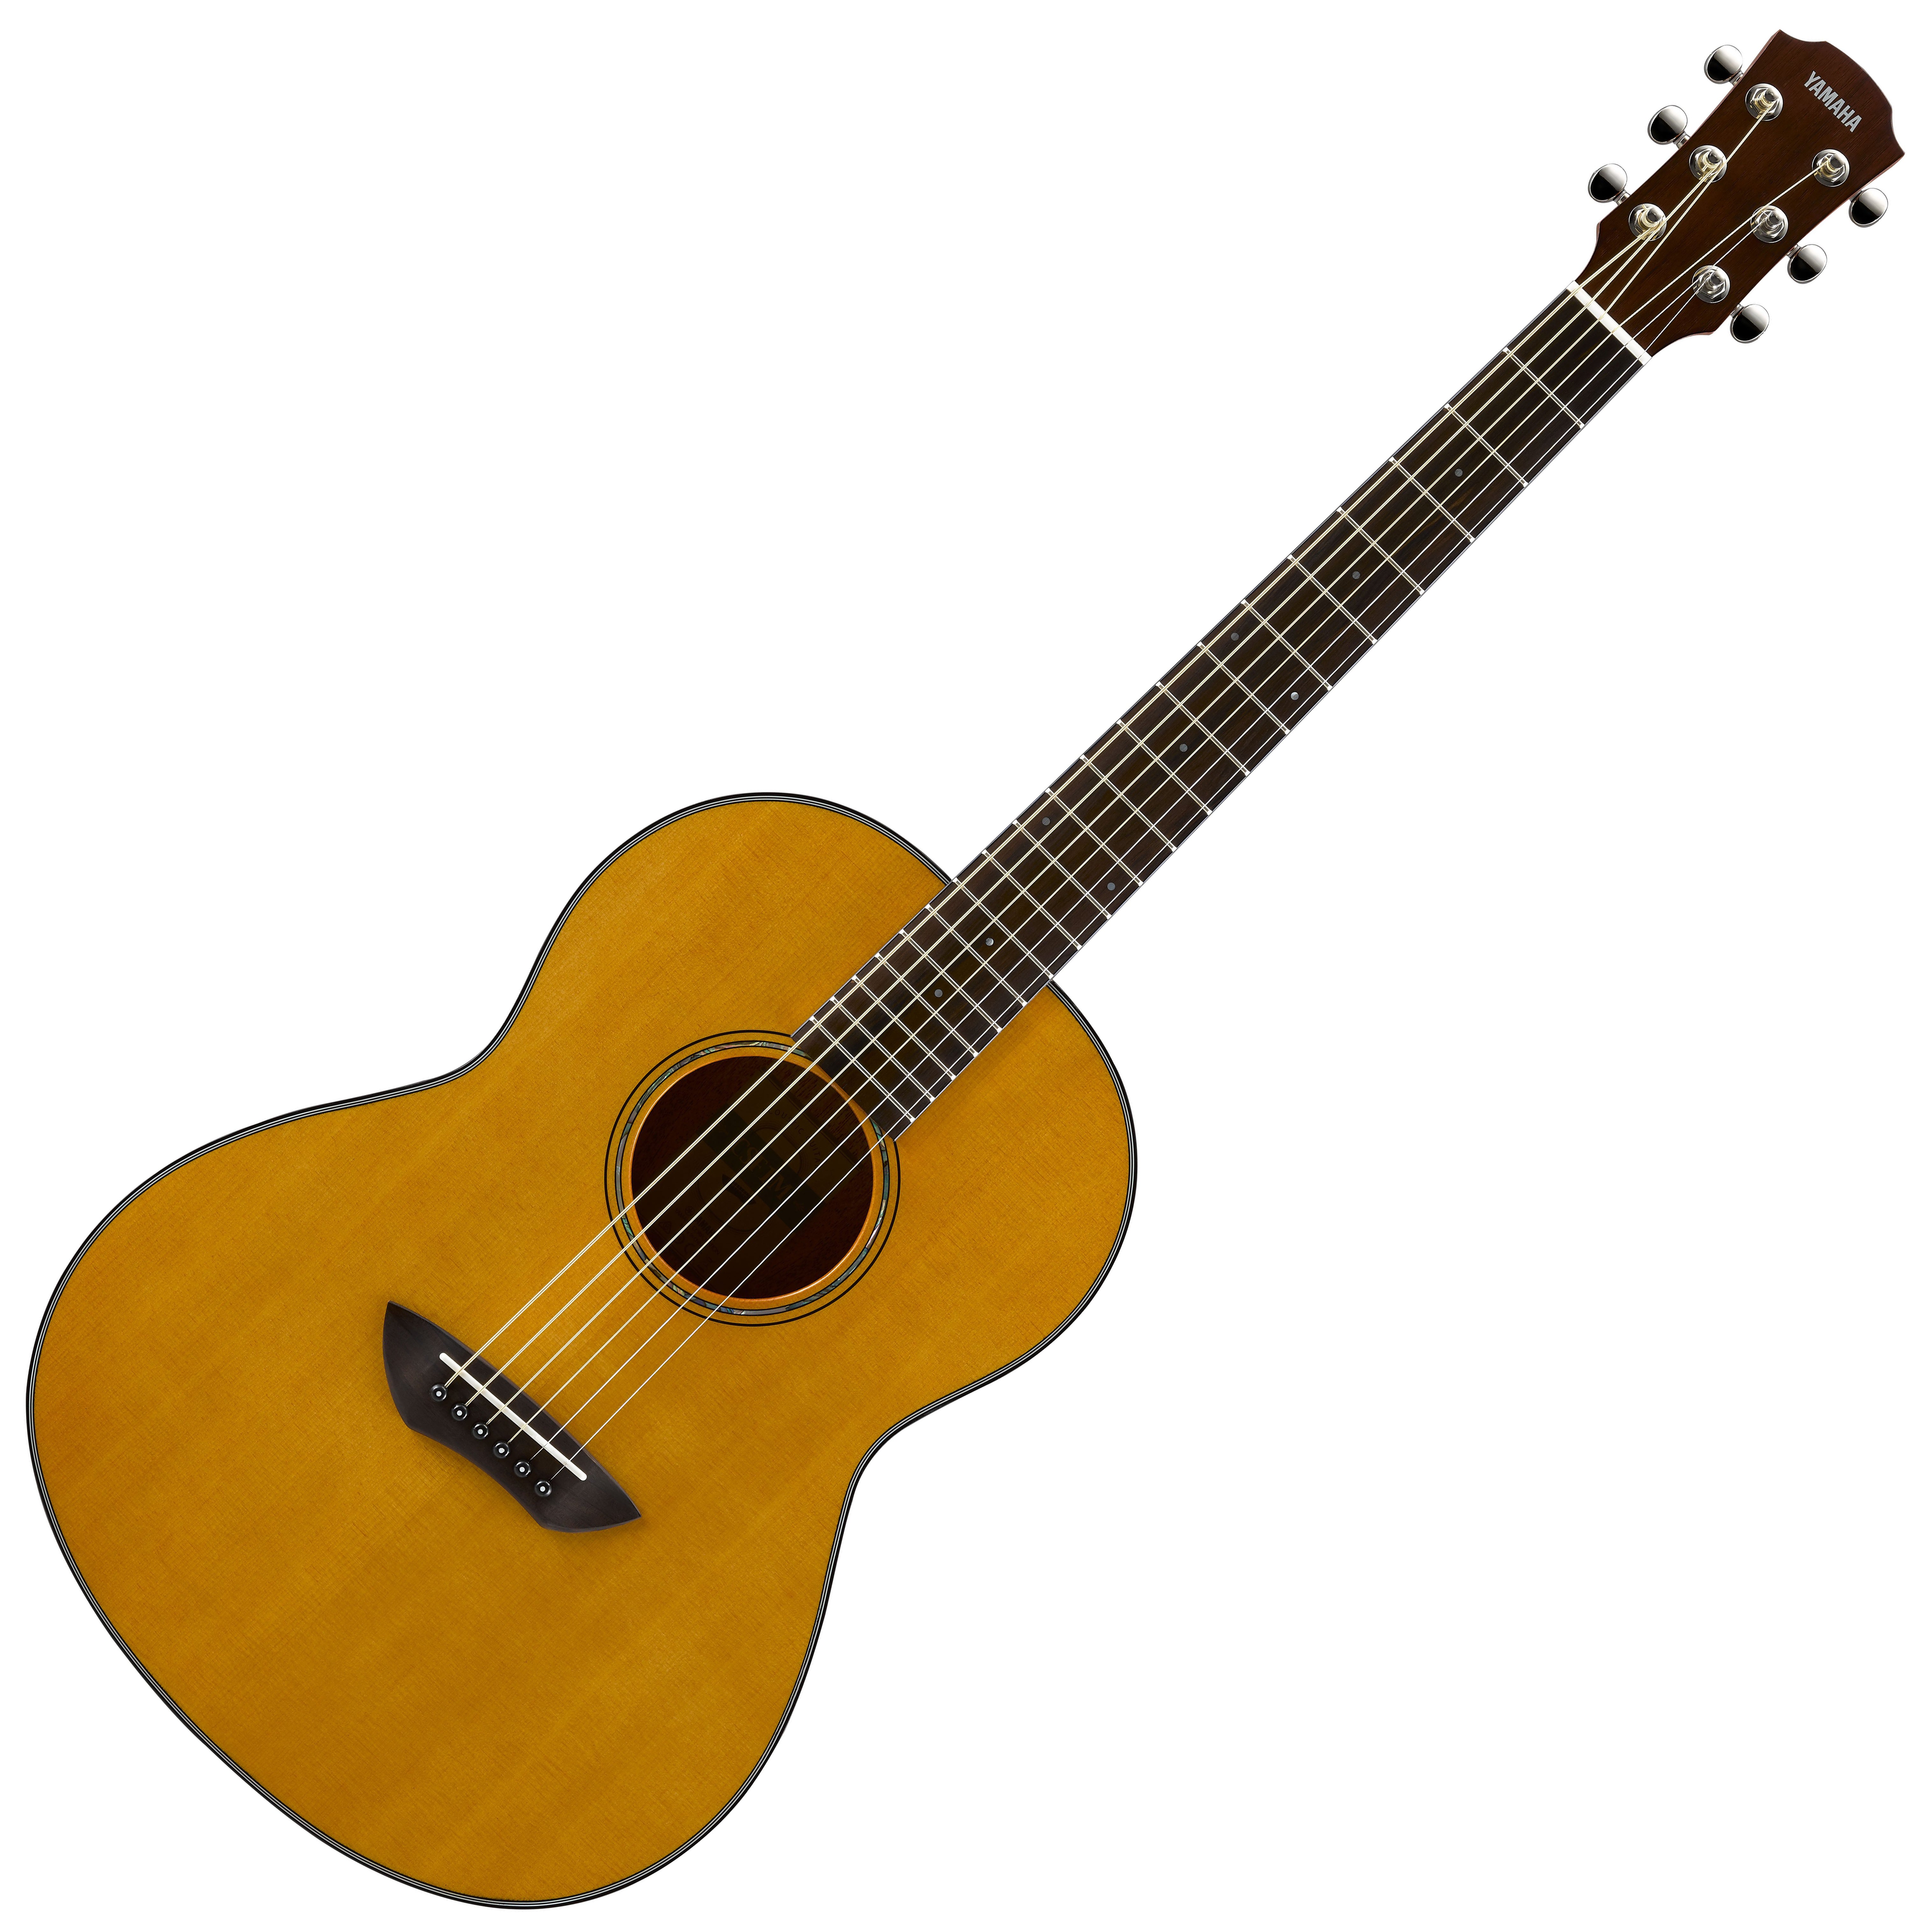 定番商品ooo style acoustics guitar 大野さん専用 アコースティックギター